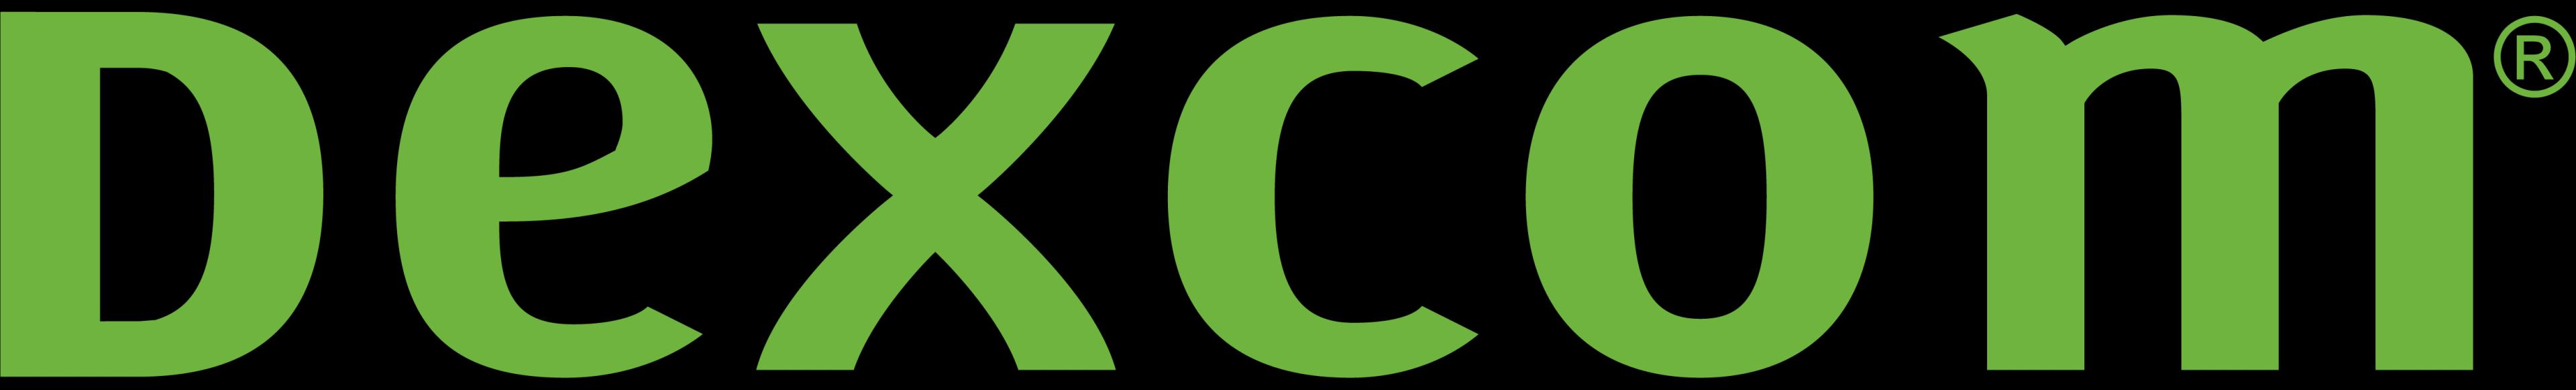 Dexcom_logo